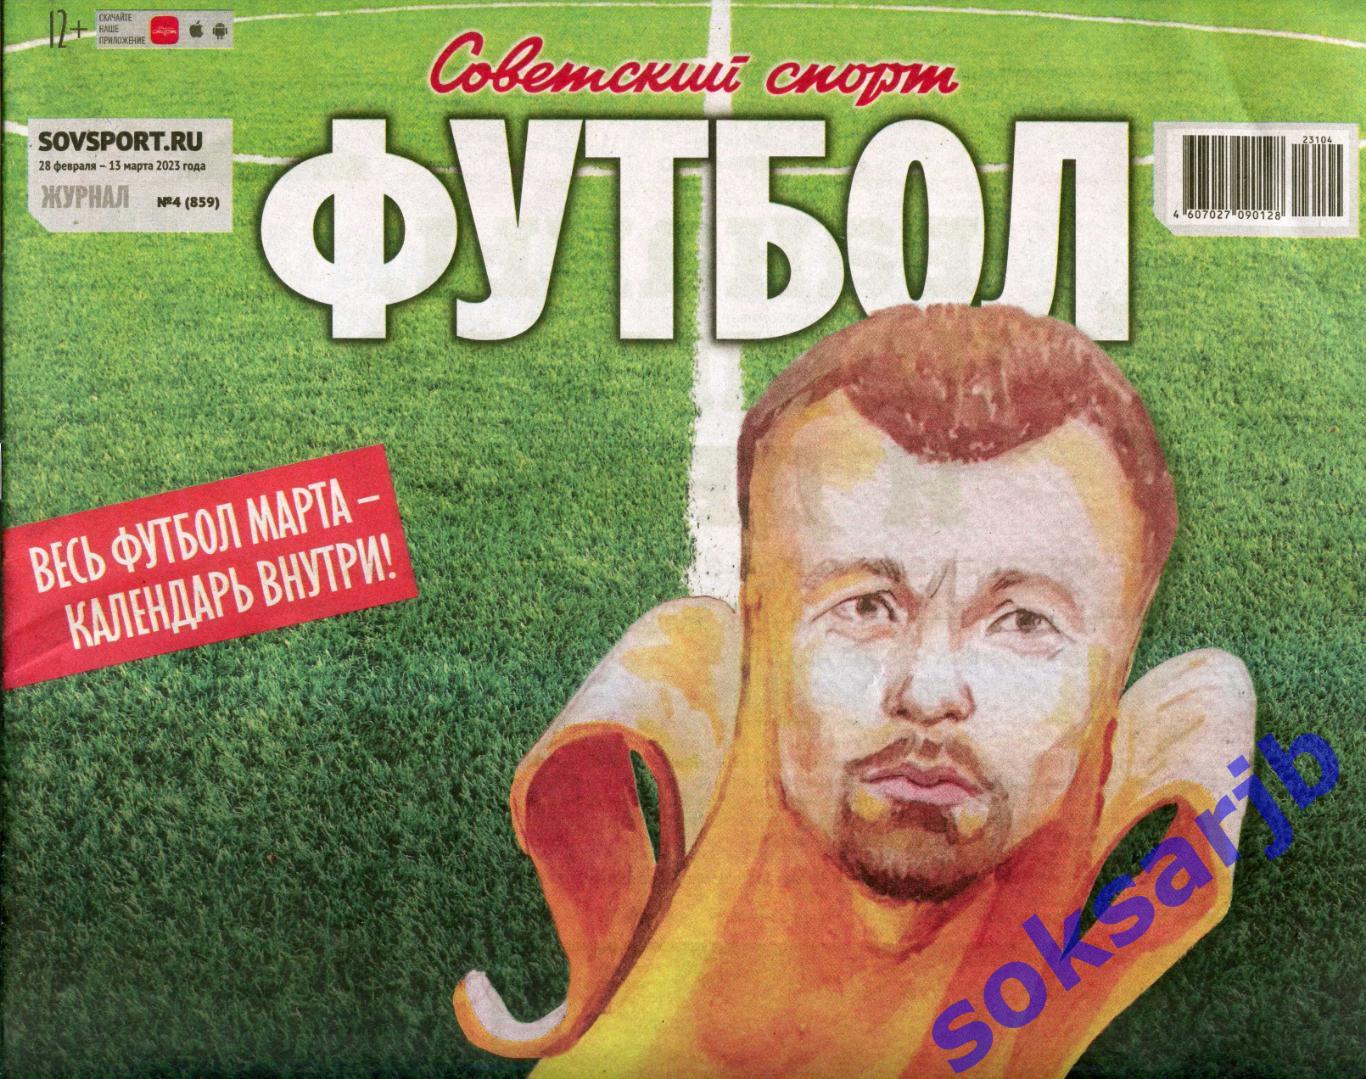 2023. Еженедельник Советский спорт - Футбол №4 (859).